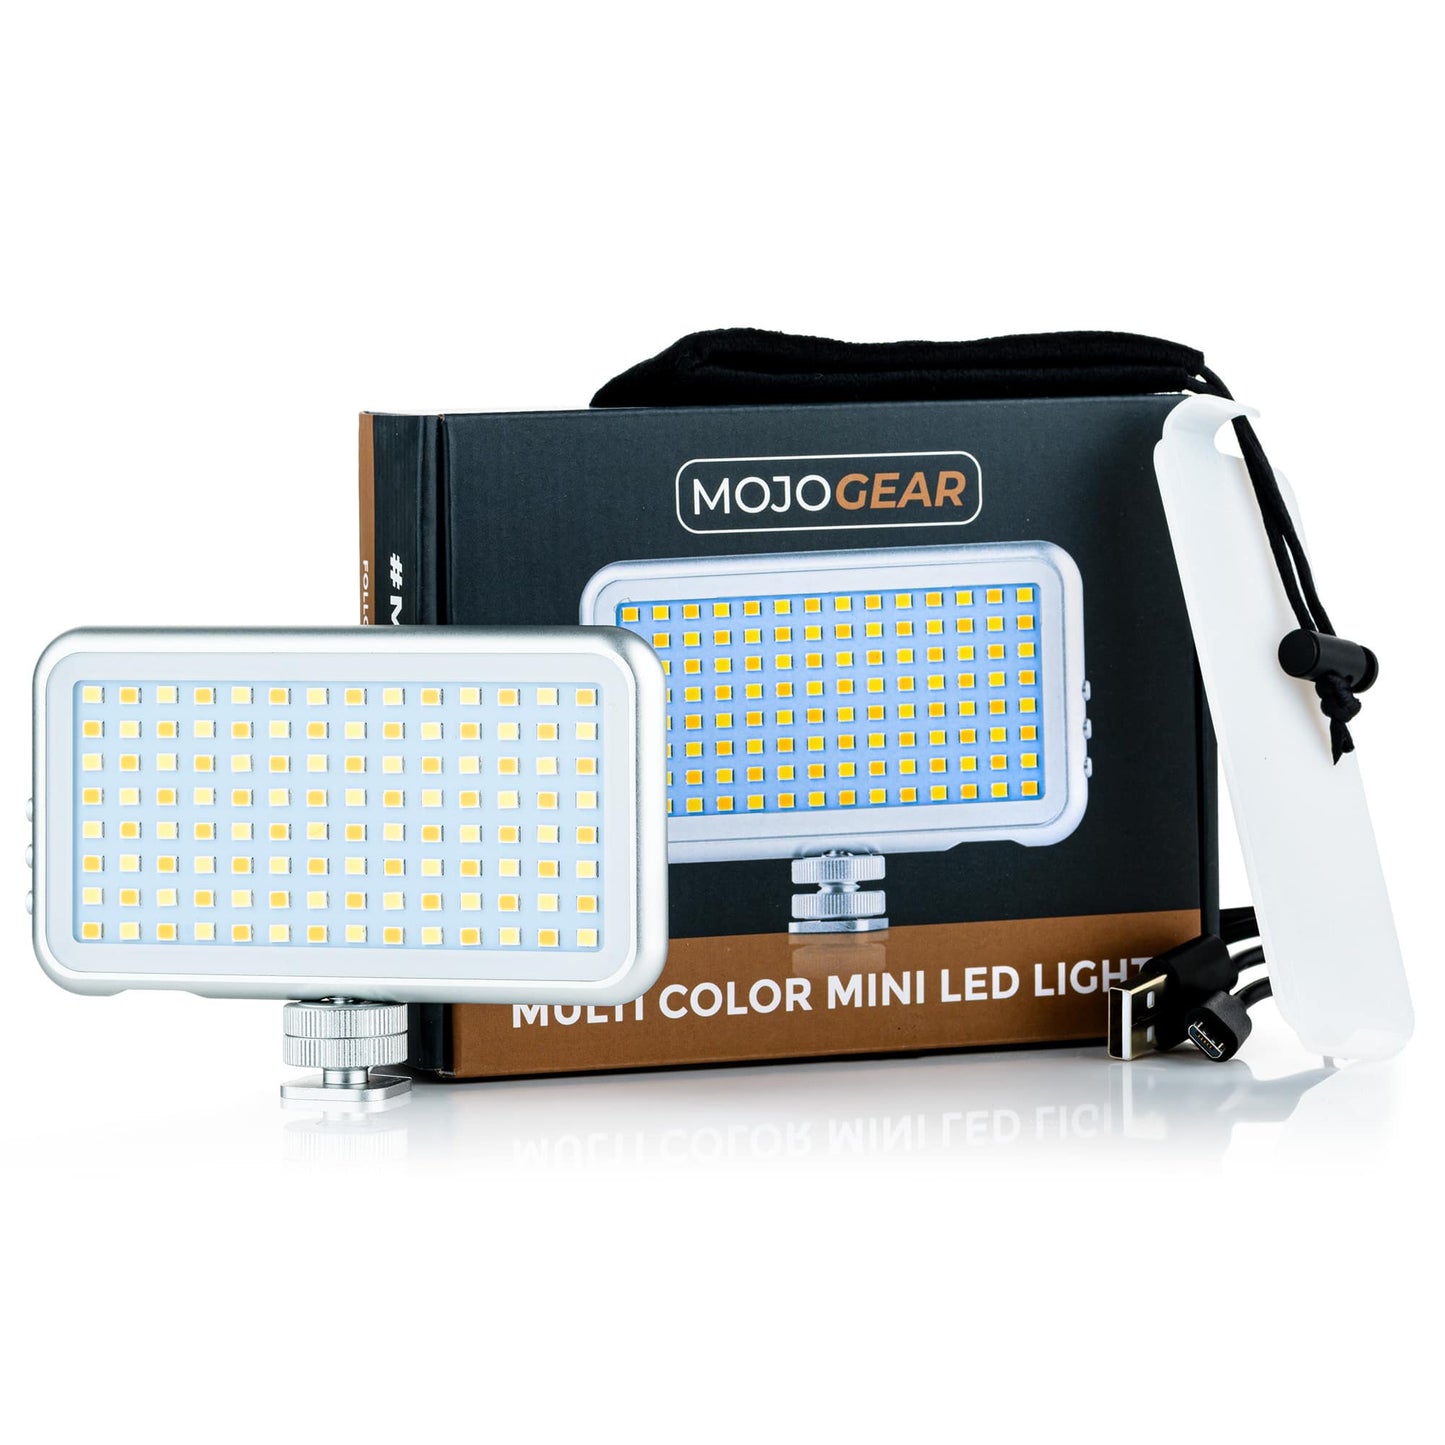 MOJOGEAR Multi Color Mini LED light